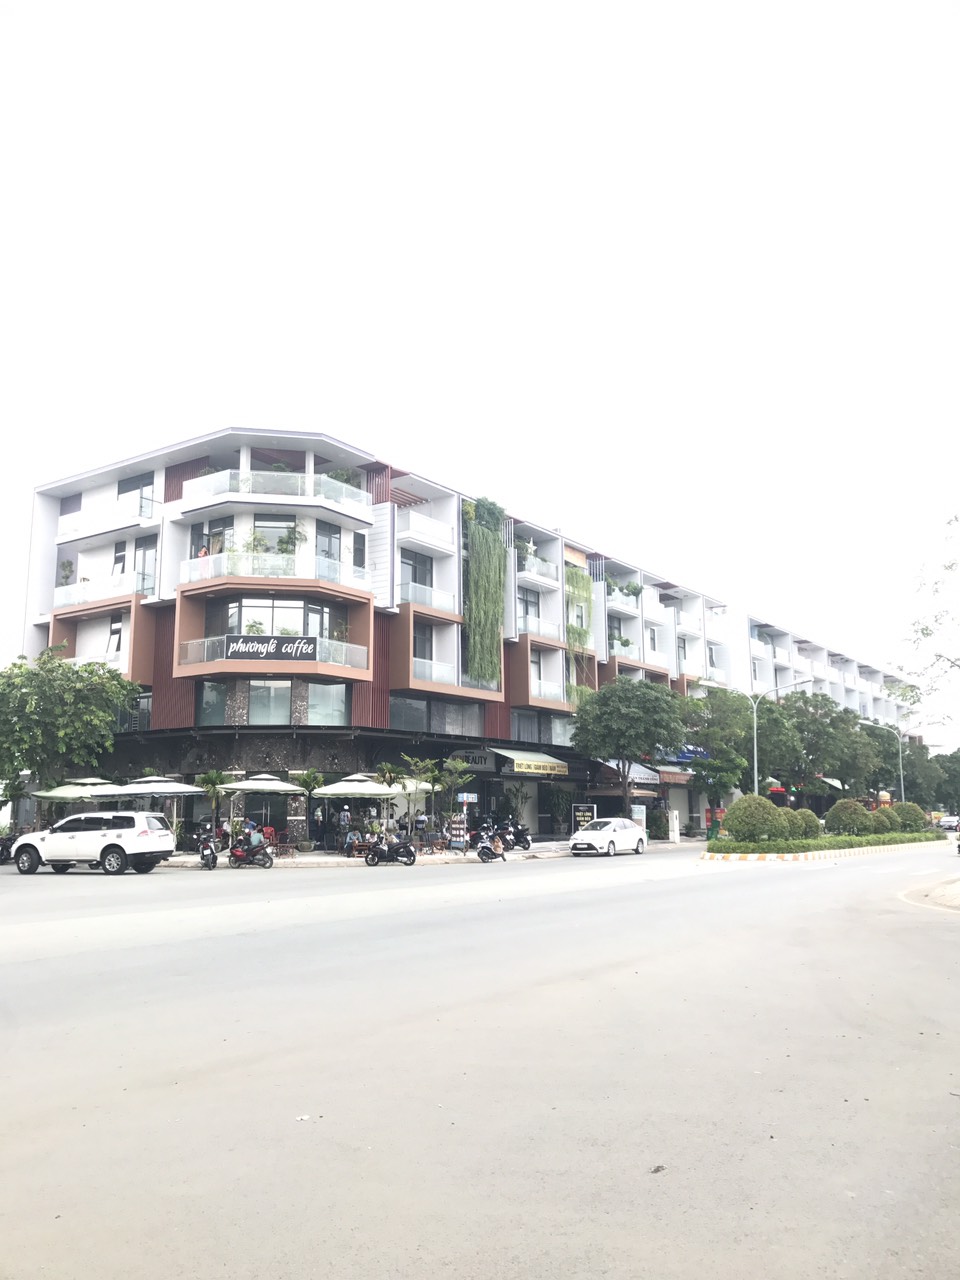 Shophouse Dương Hồng, Đường Lớn 25m, Kinh doanh , Buôn bán, giá rẻ, LH: 0934.93.39.78